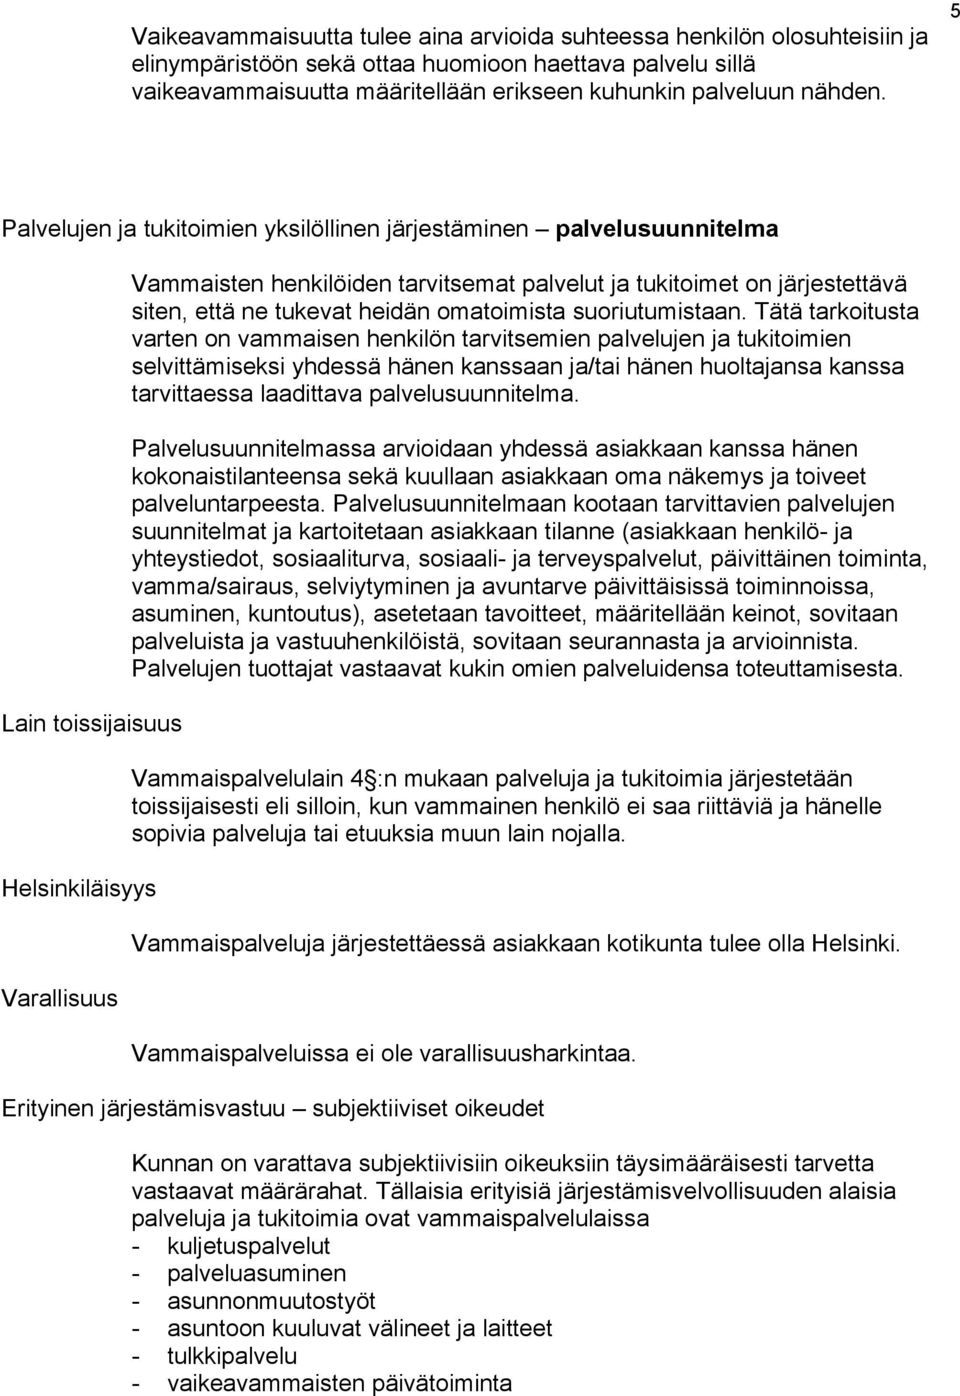 5 Palvelujen ja tukitoimien yksilöllinen järjestäminen palvelusuunnitelma Lain toissijaisuus Helsinkiläisyys Varallisuus Vammaisten henkilöiden tarvitsemat palvelut ja tukitoimet on järjestettävä